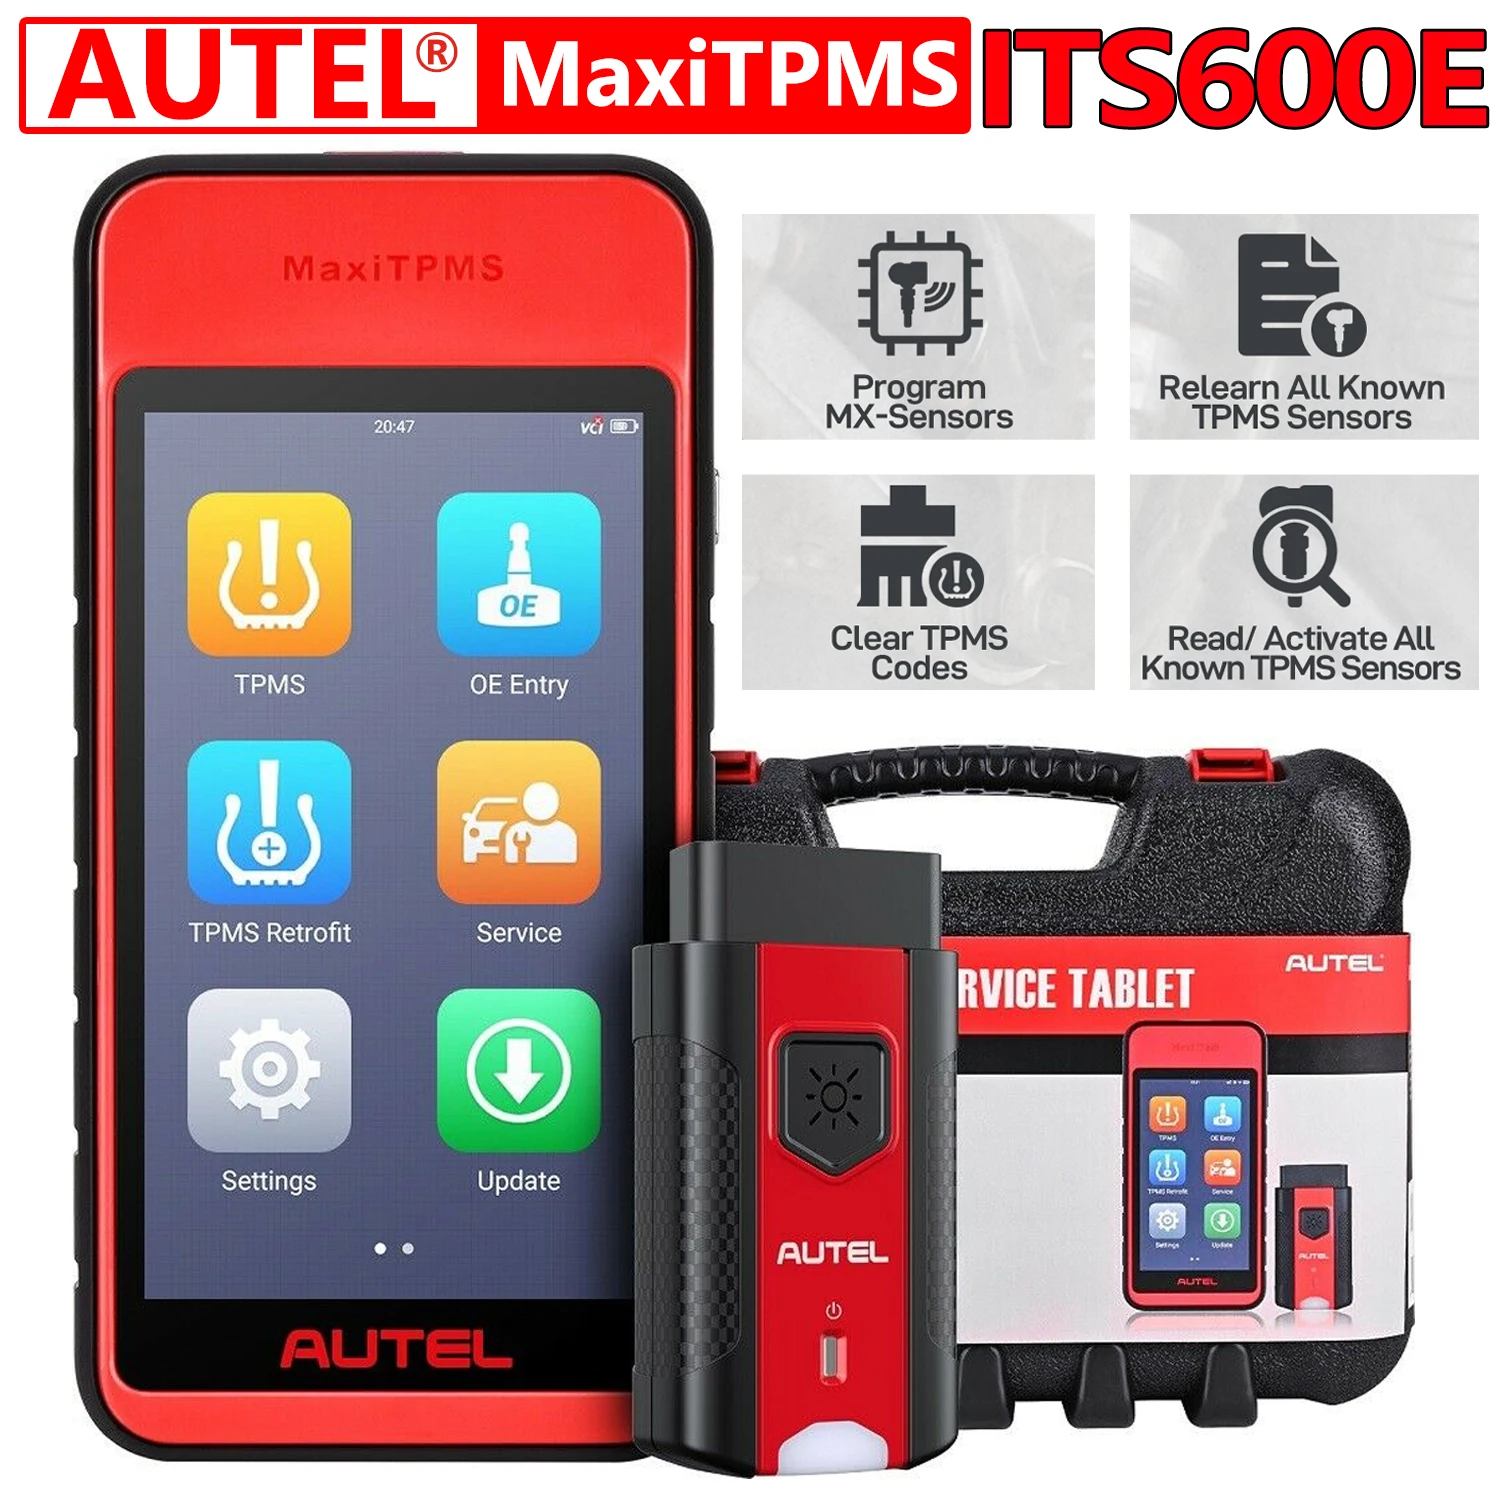 

Autel ITS600 TPMS Diagnostic Tool Sensor Relearn Activate Program MX-Sensors Tool Upgraded of TS501/ TS508 Oil Reset/ EPB/ BMS